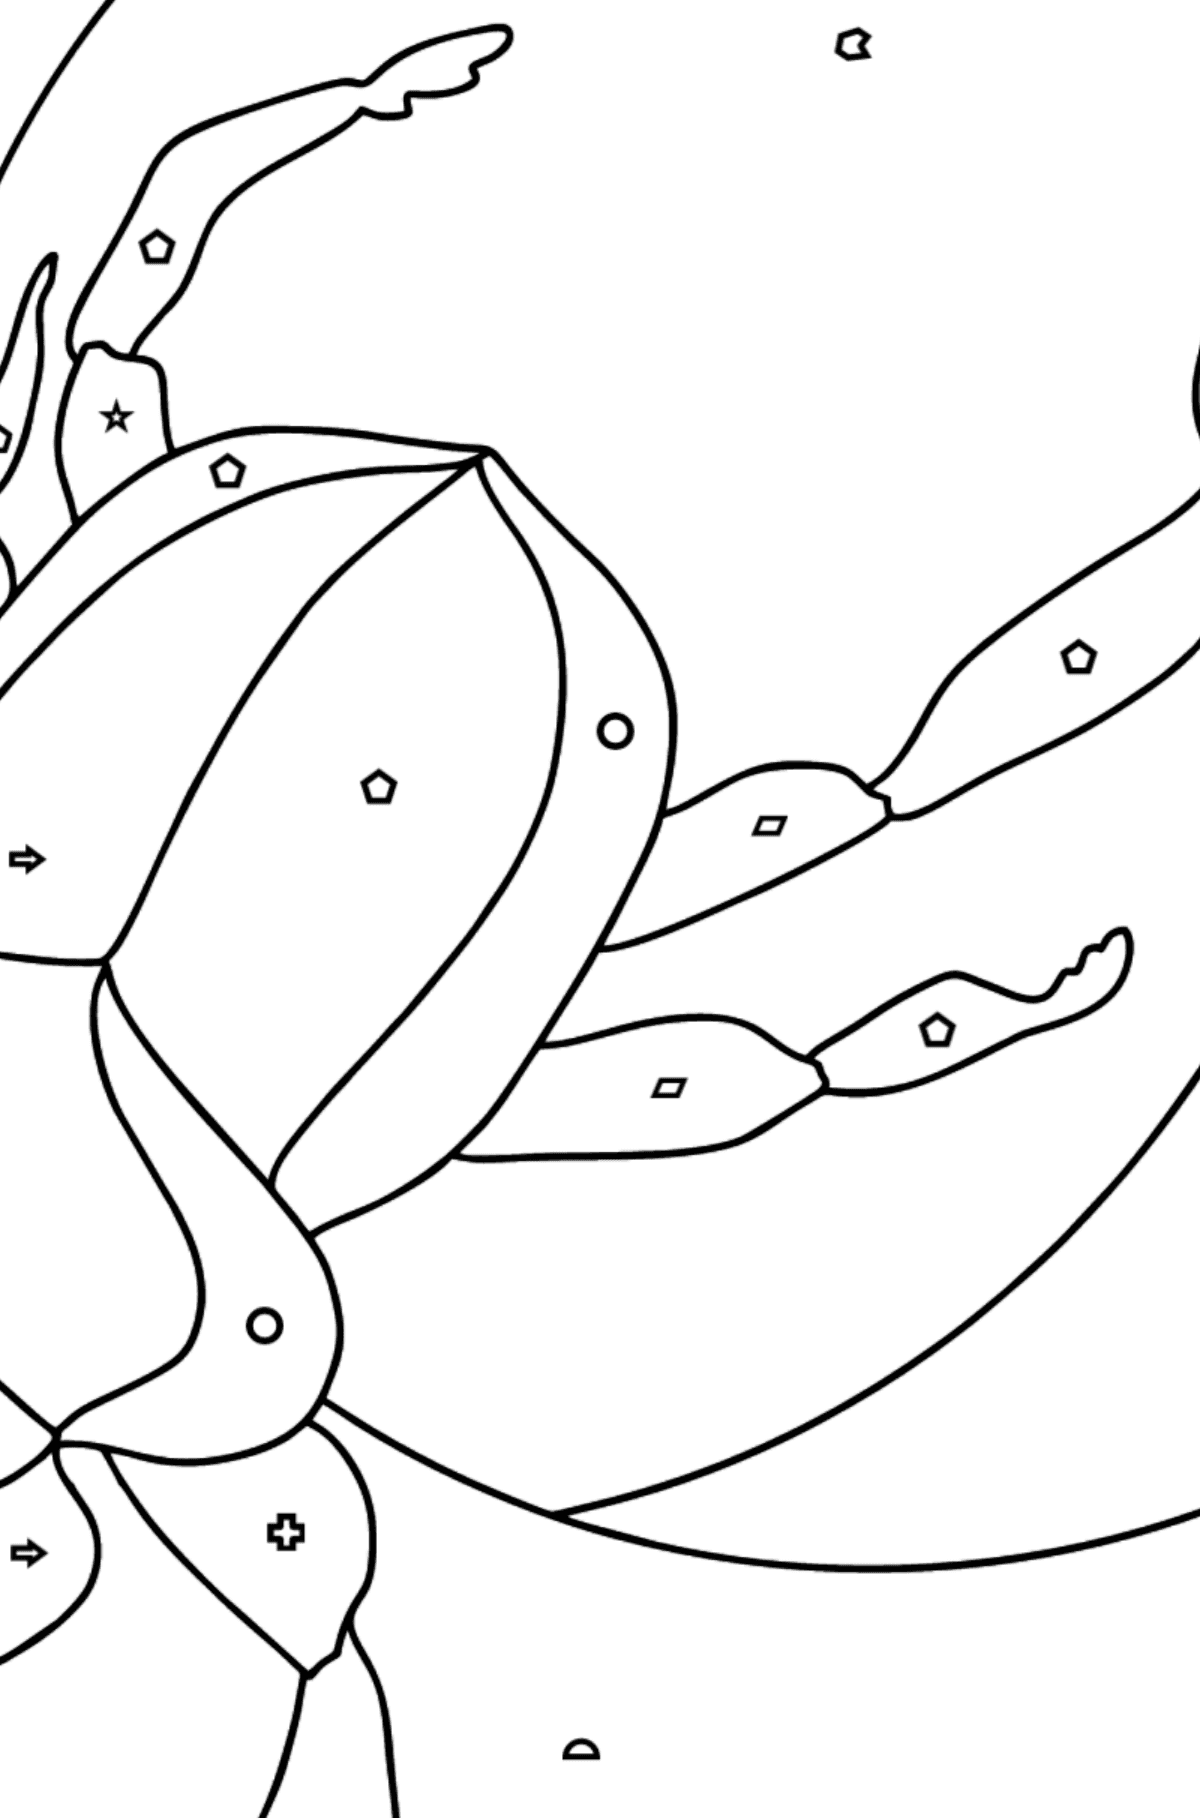 Ausmalbild - Ein Skarabäus-Käfer oder ein Symbol der Erneuerung - Ausmalen nach Geometrischen Formen für Kinder